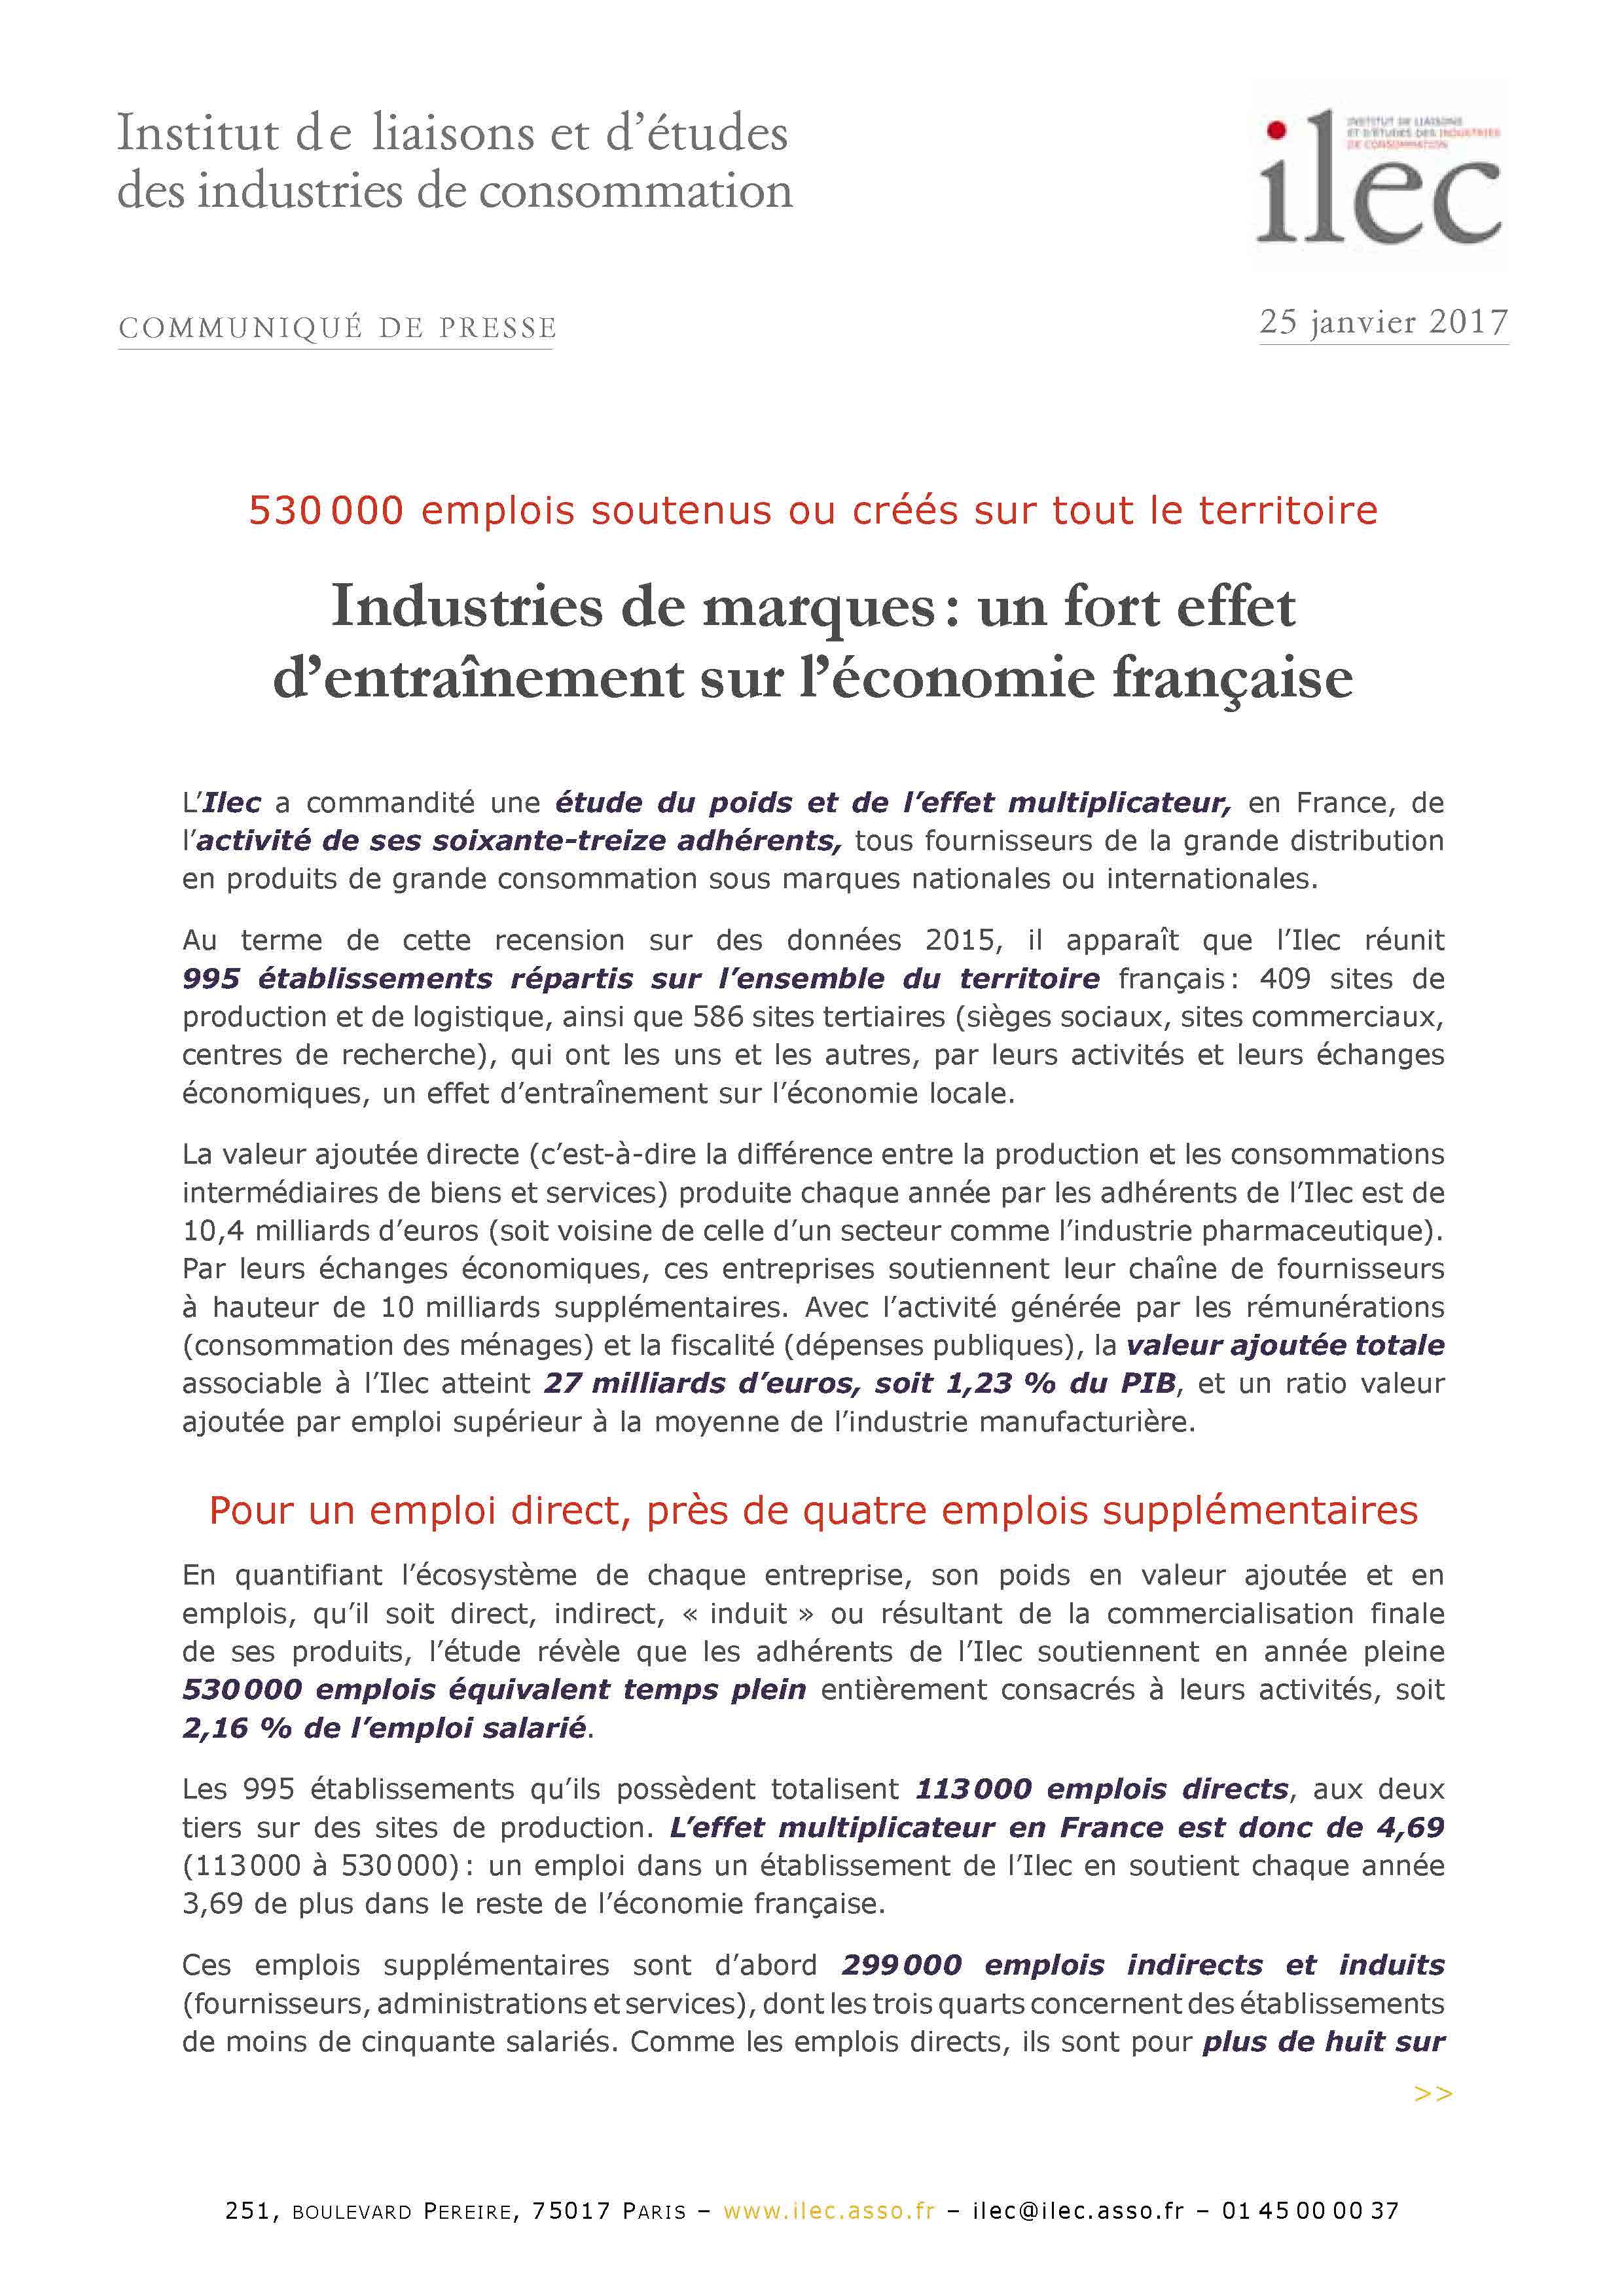 Industries de marques : un fort effet d’entraînement sur l’économie française (communiqué de presse)